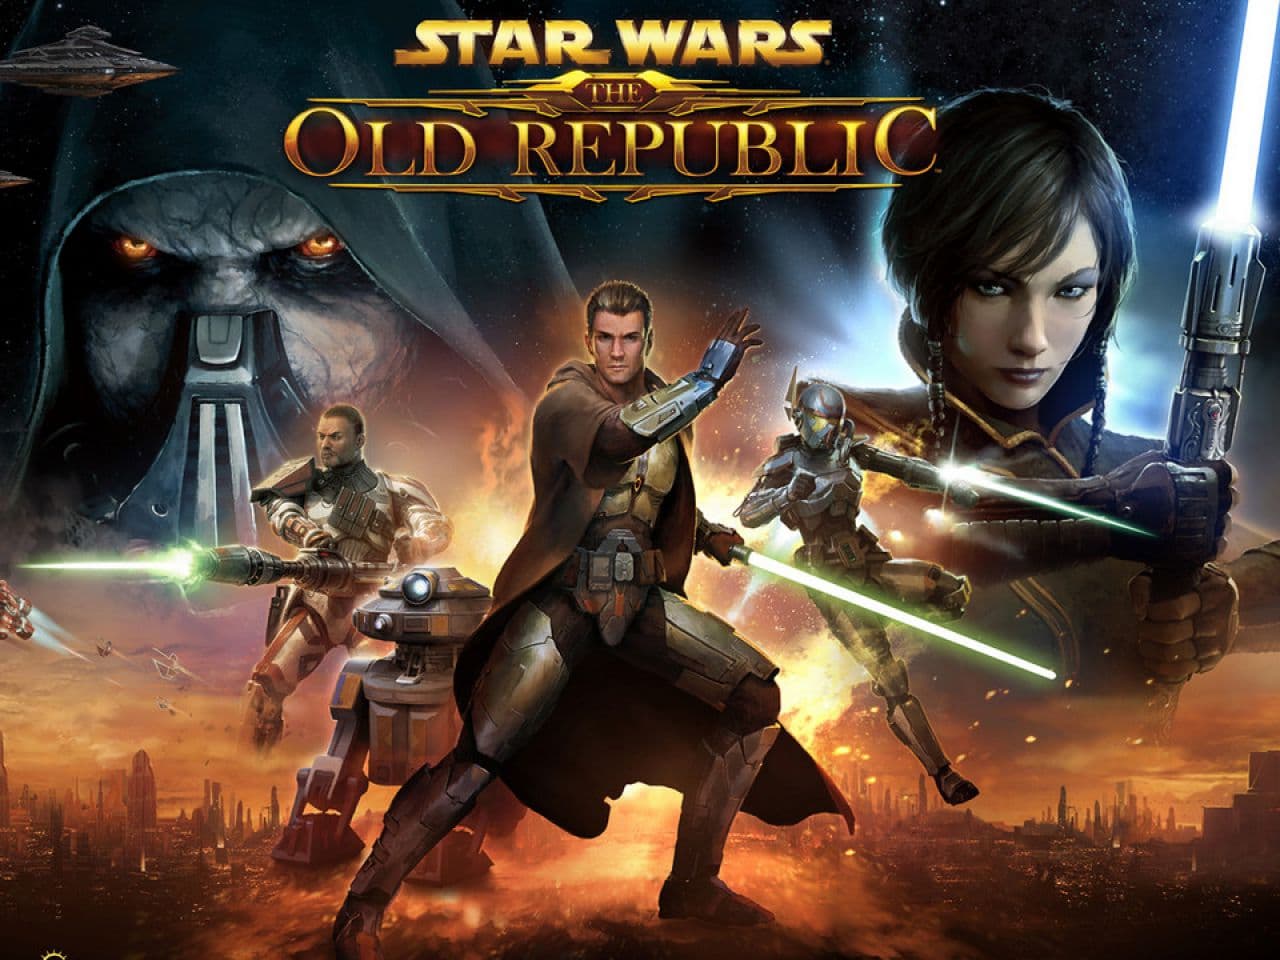 Star Wars: The Old Republic uscito su Steam